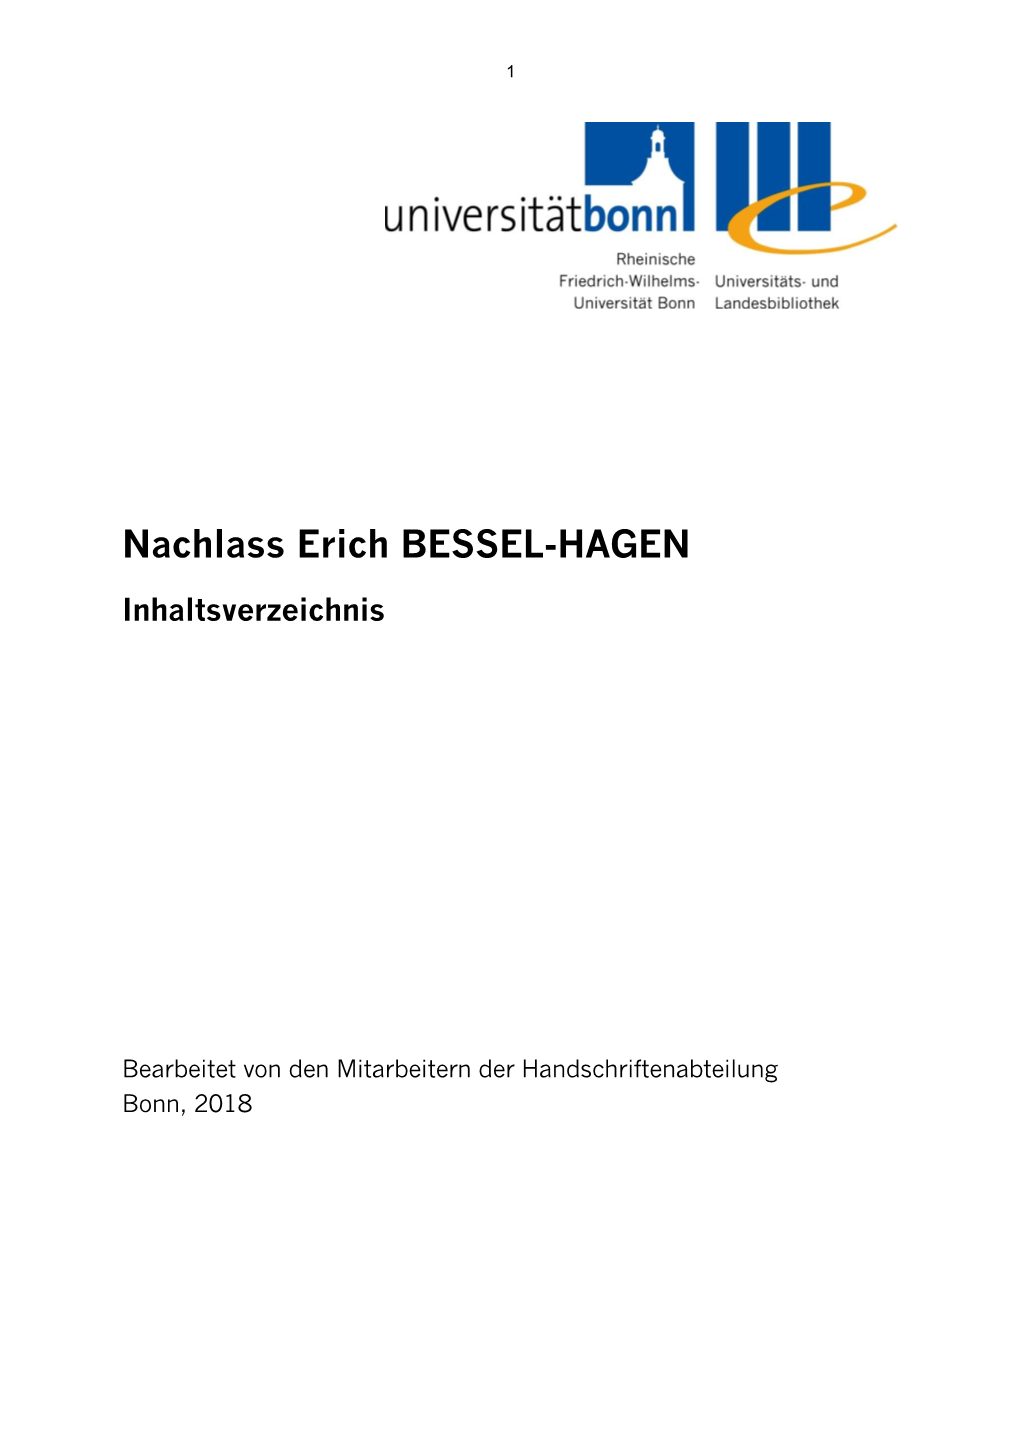 Zum Korrespondenznachlaß Erich Bessel-Hagen